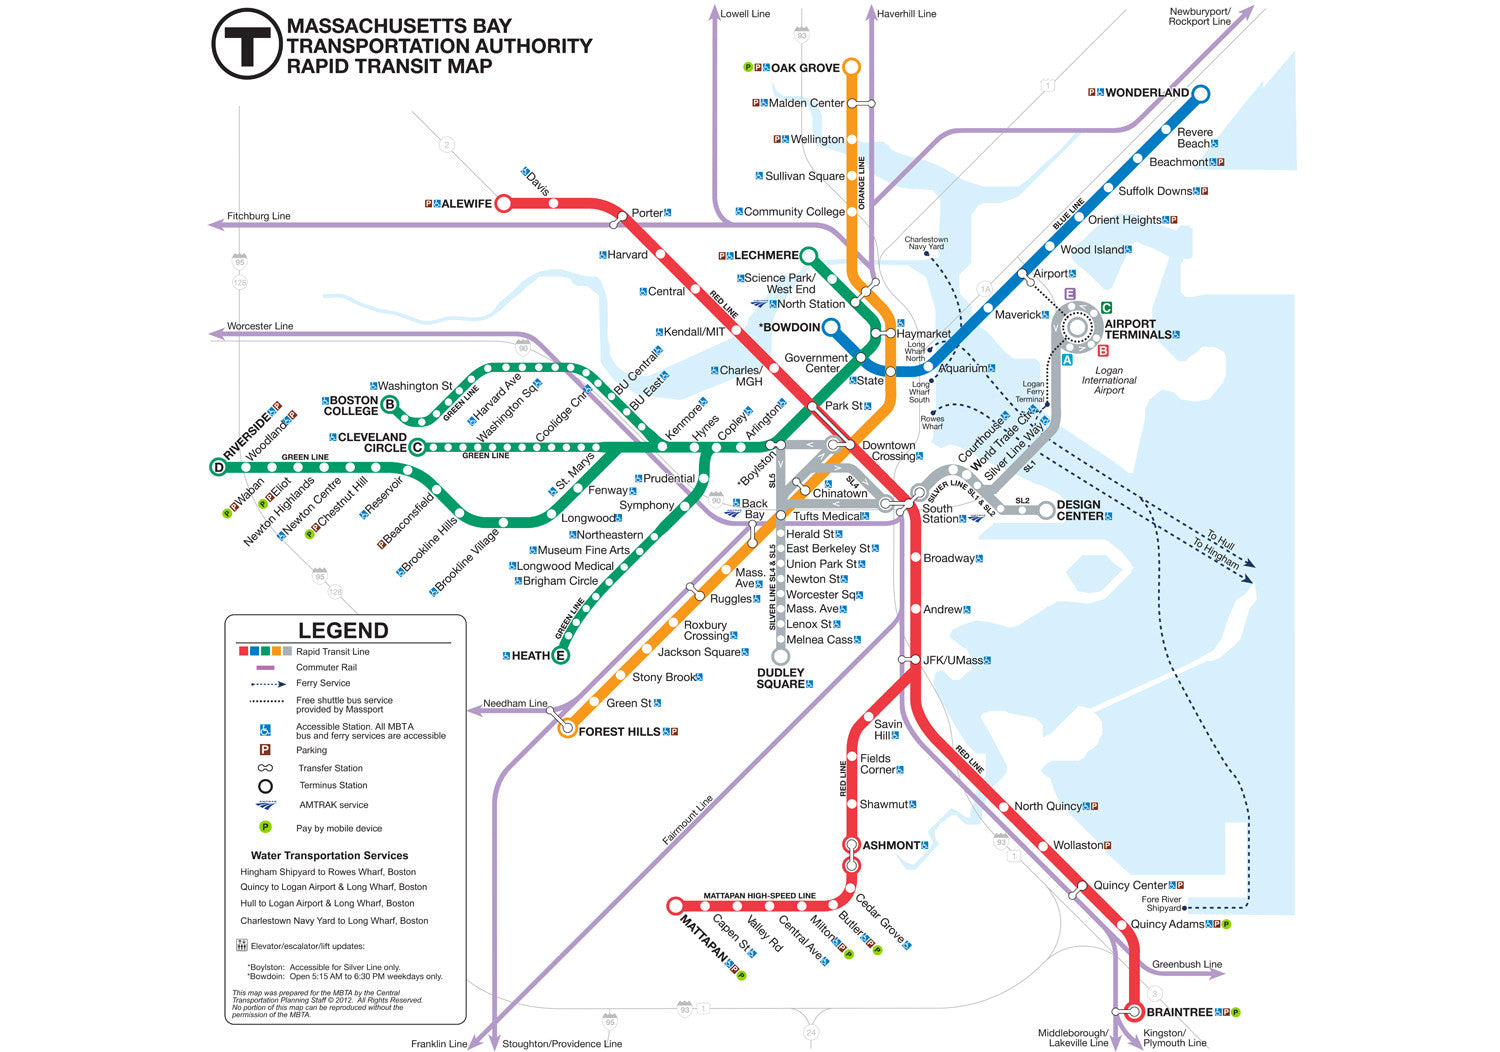 2012 MBTA Rapid Transit Map w/Commuter Rail